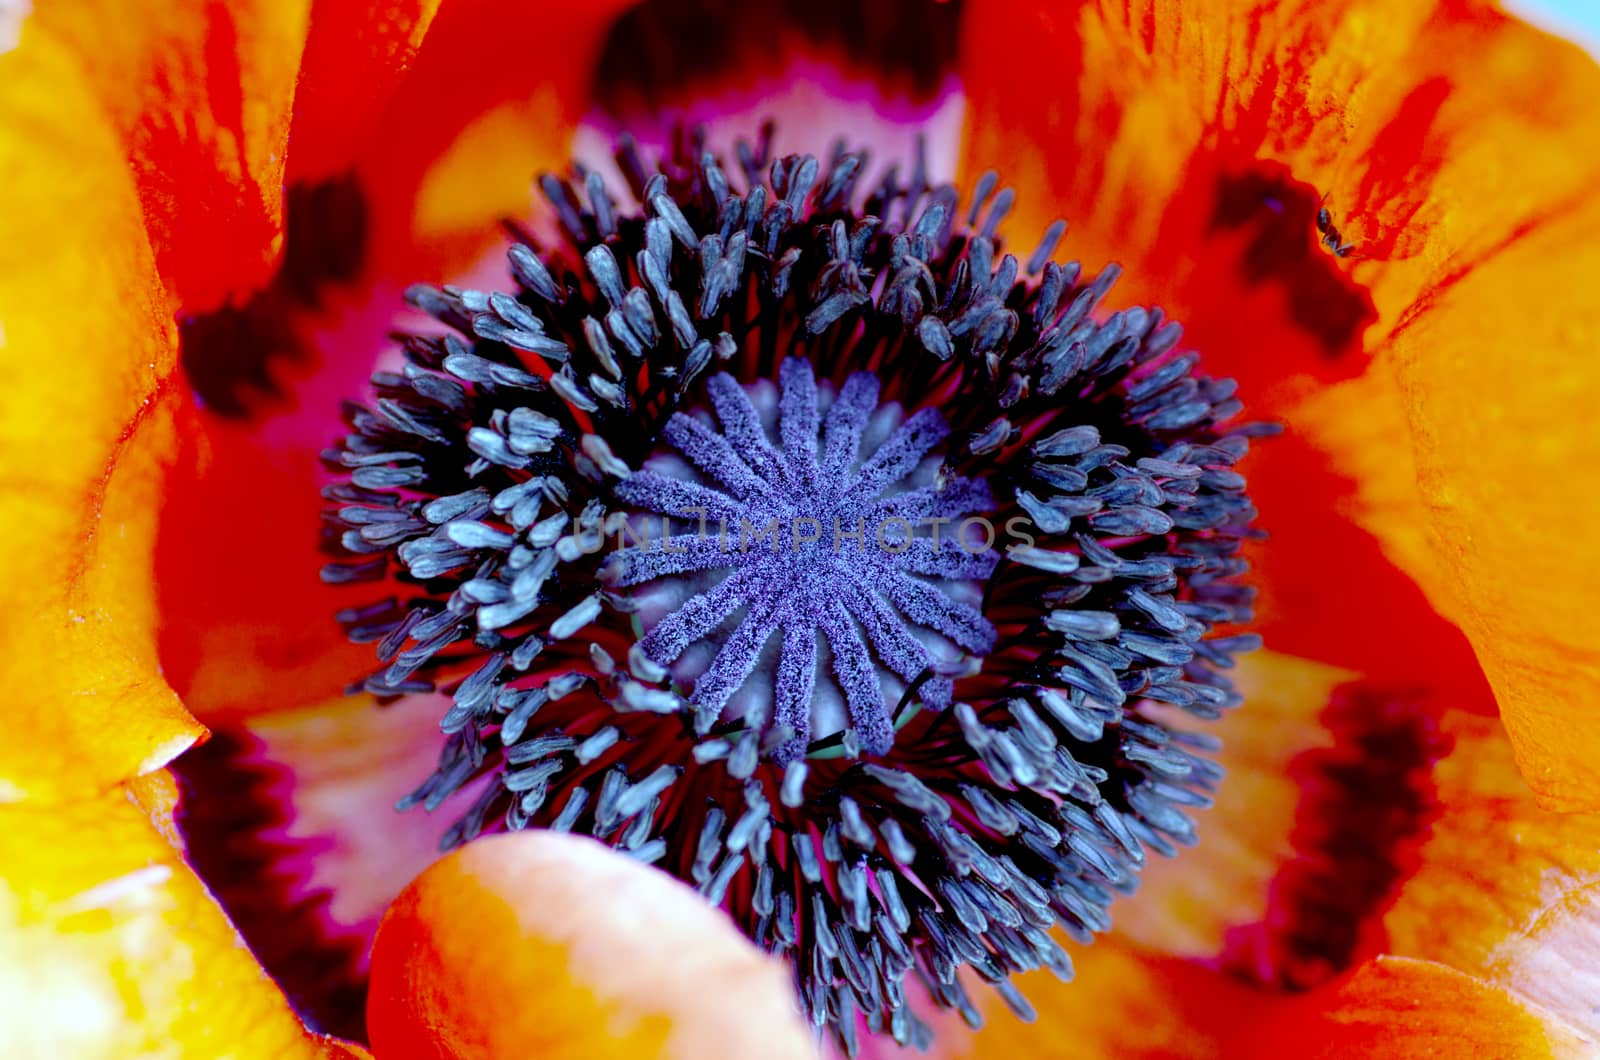 poppy heart macro. Shot red poppy close-up by dolnikow